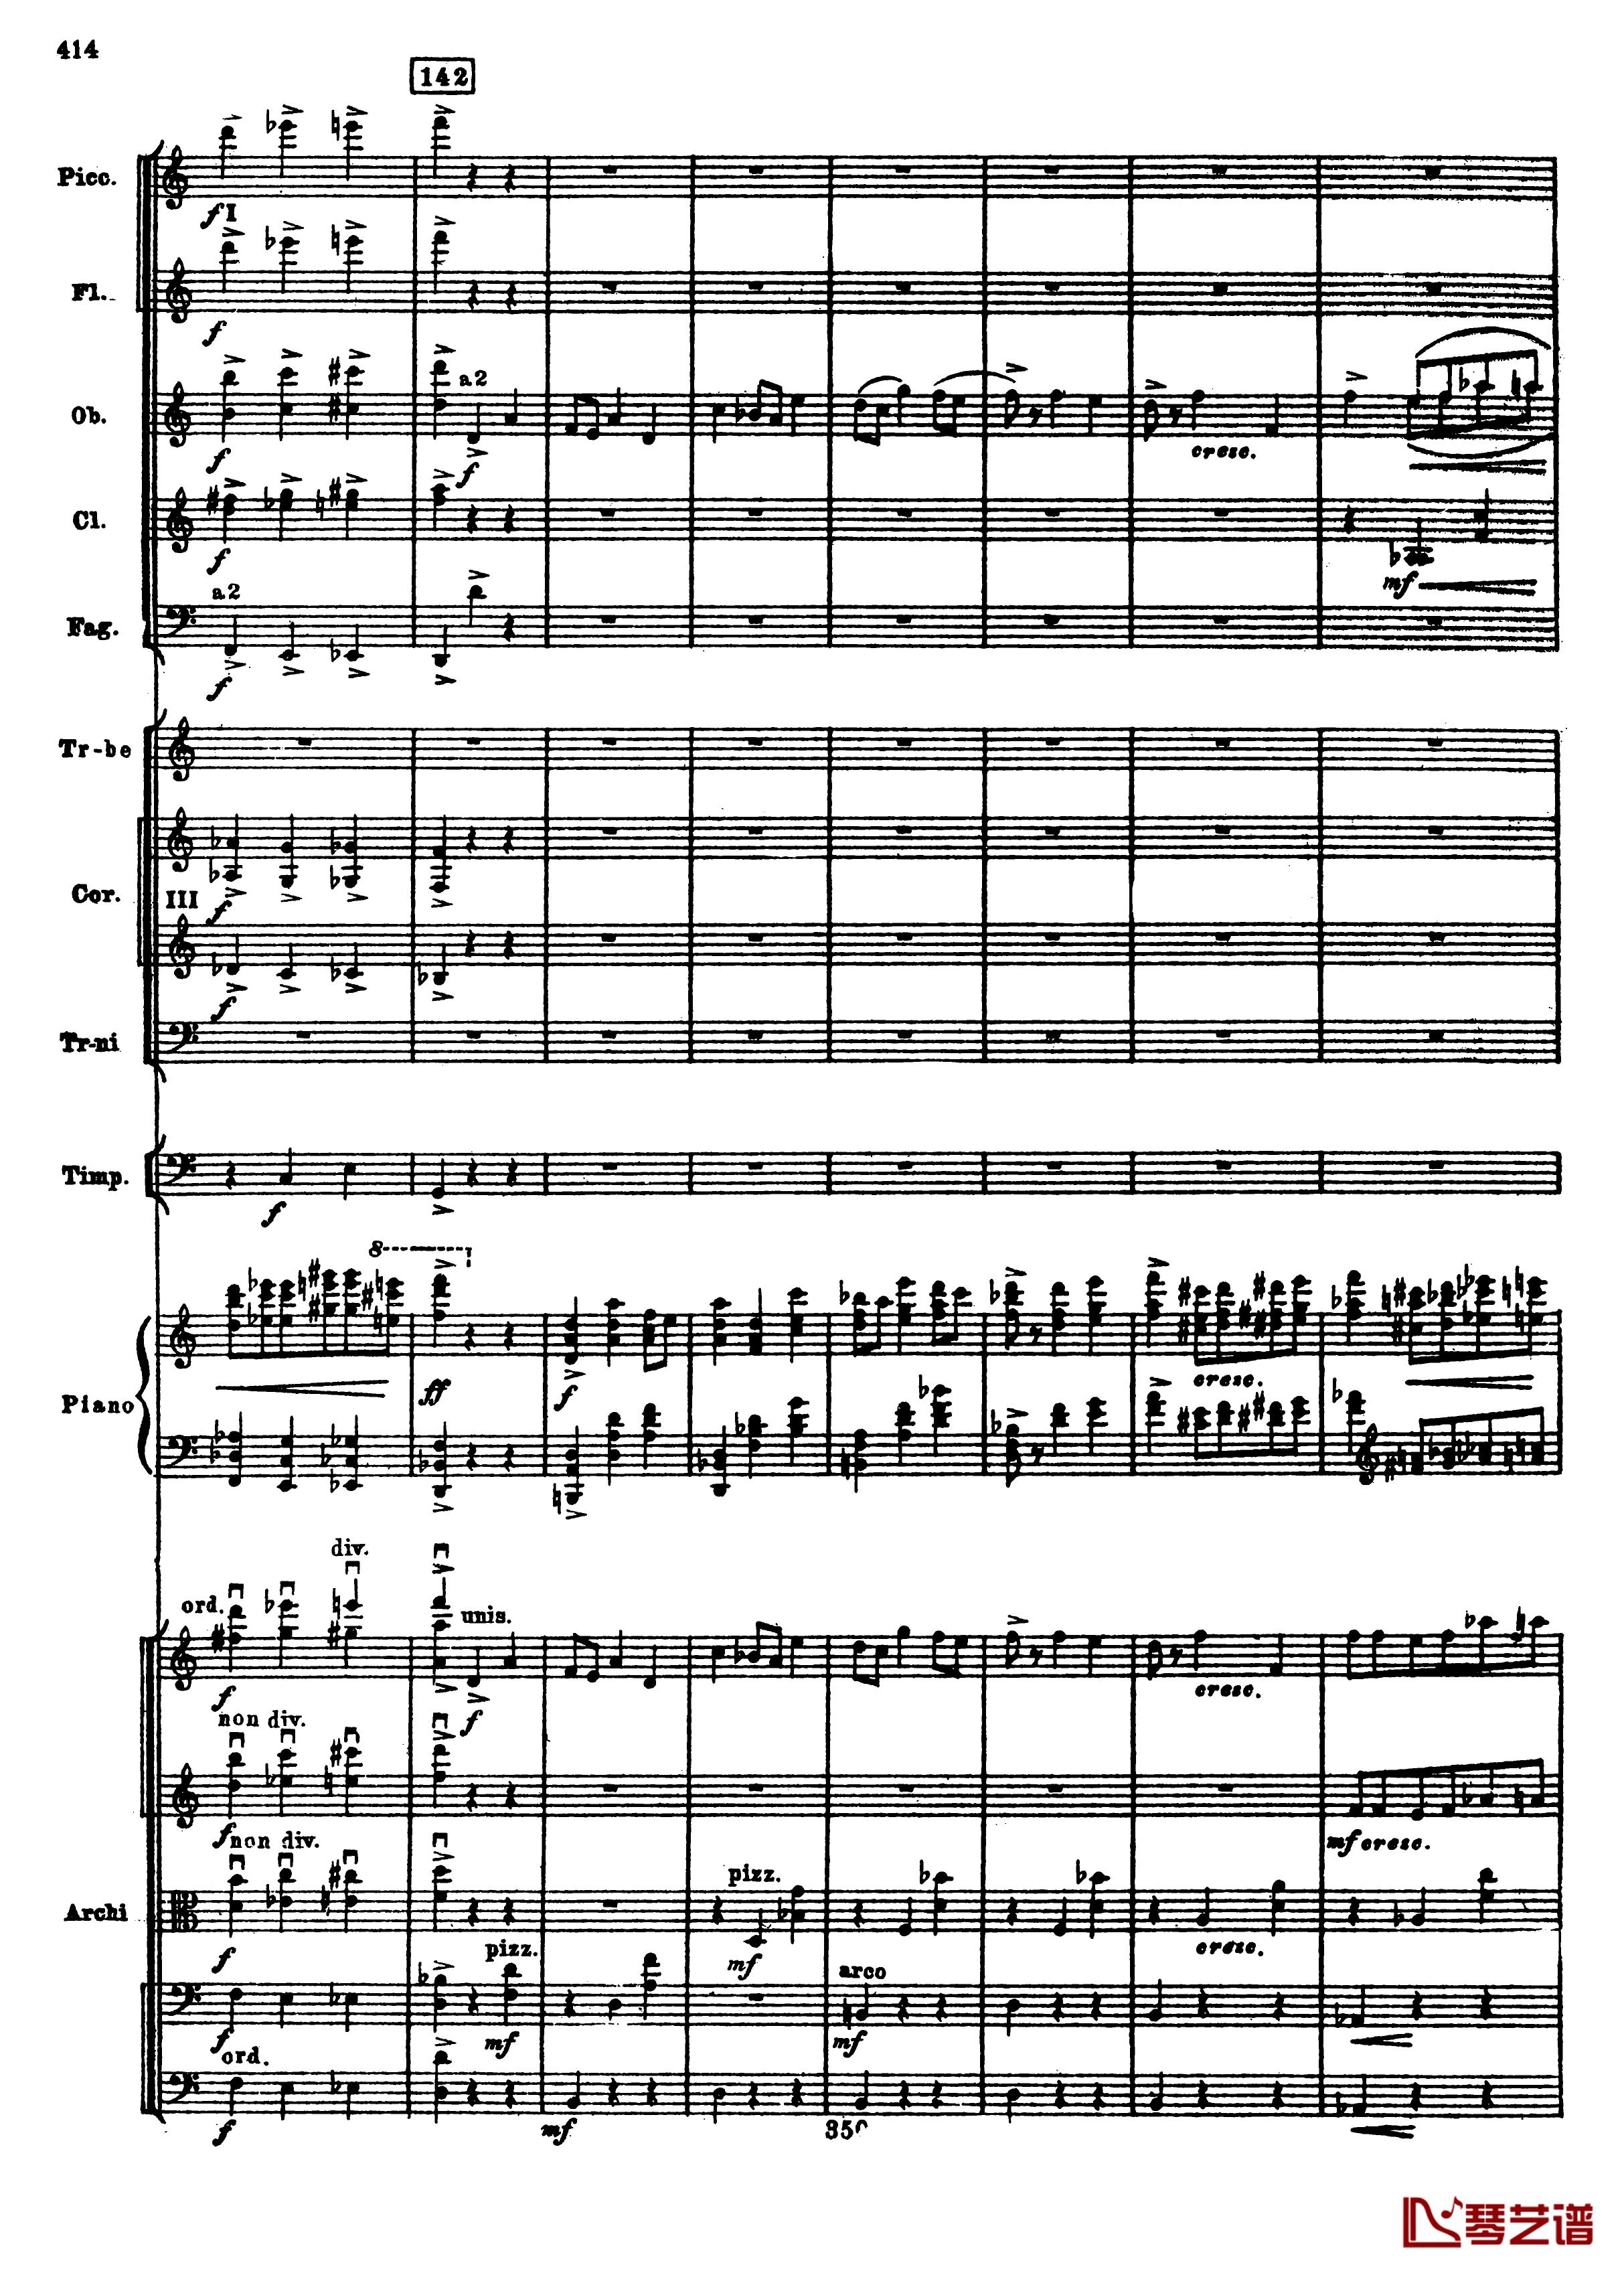 普罗科菲耶夫第三钢琴协奏曲钢琴谱-总谱-普罗科非耶夫146